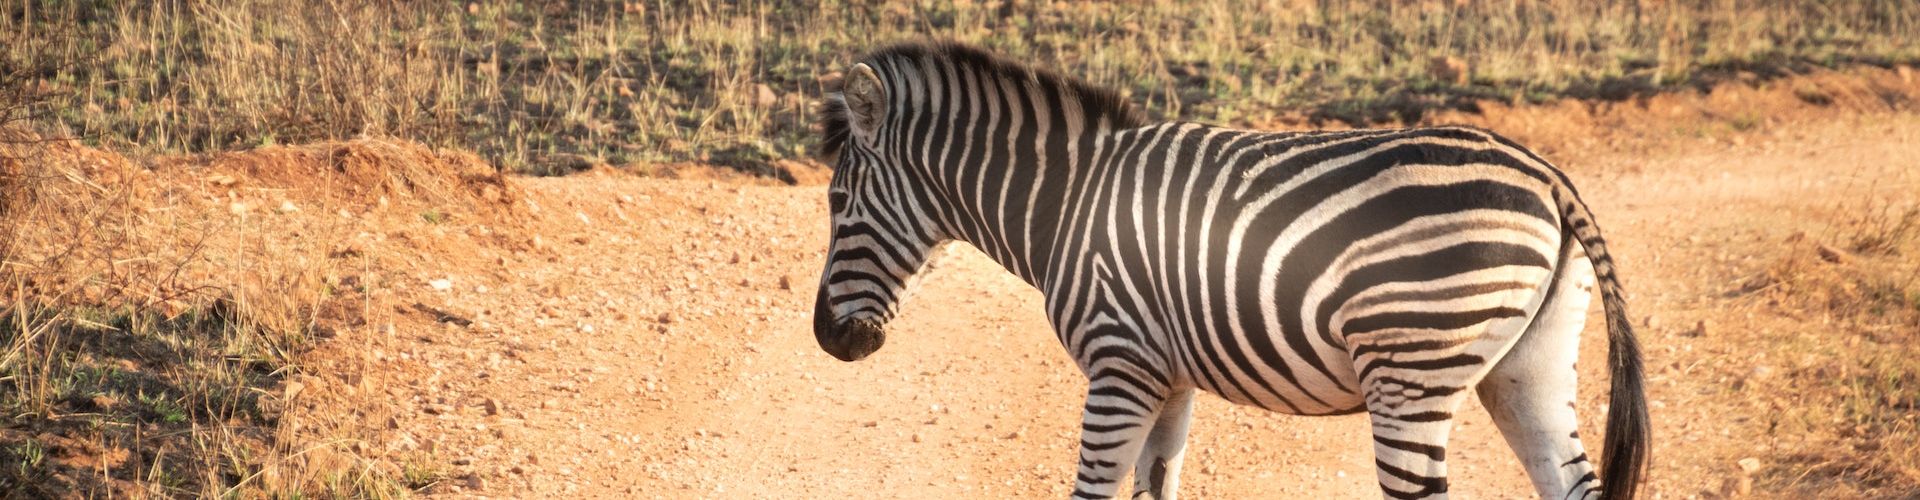 A Zebra crossing a rough road in Tanzania